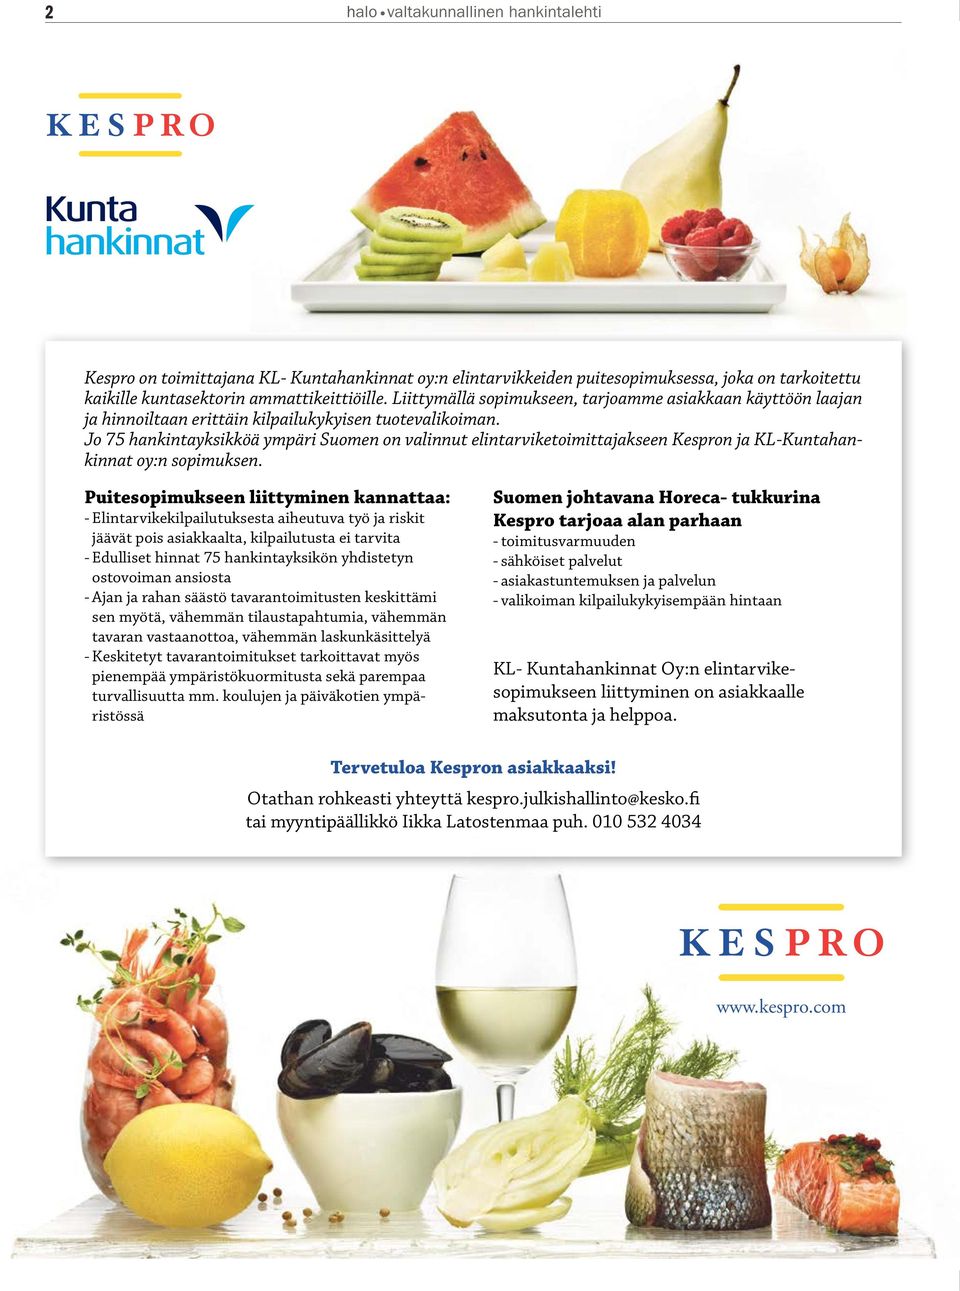 Jo 75 hankintayksikköä ympäri Suomen on valinnut elintarviketoimittajakseen Kespron ja KL-Kuntahankinnat oy:n sopimuksen.